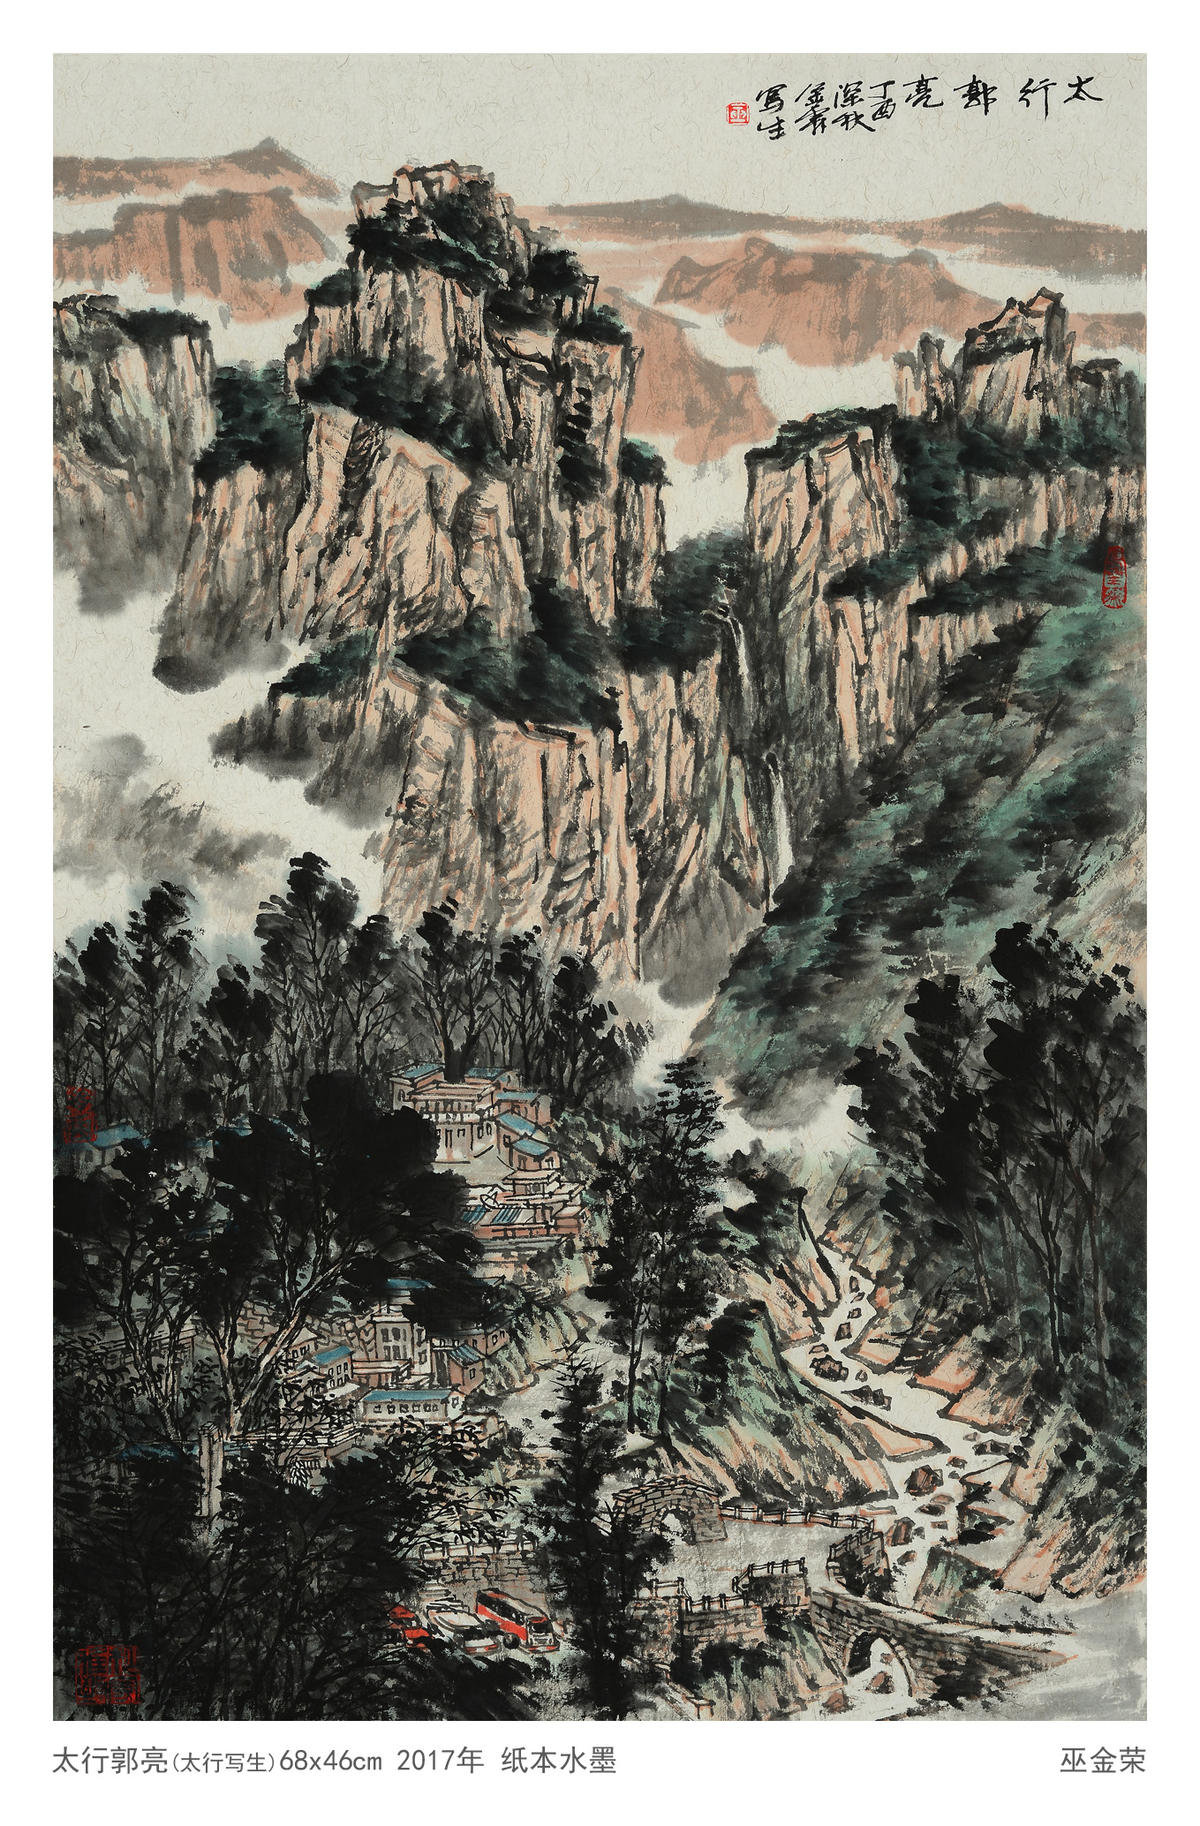 国画·巫金荣 | 游太行之画卷，赏山水之趣灵